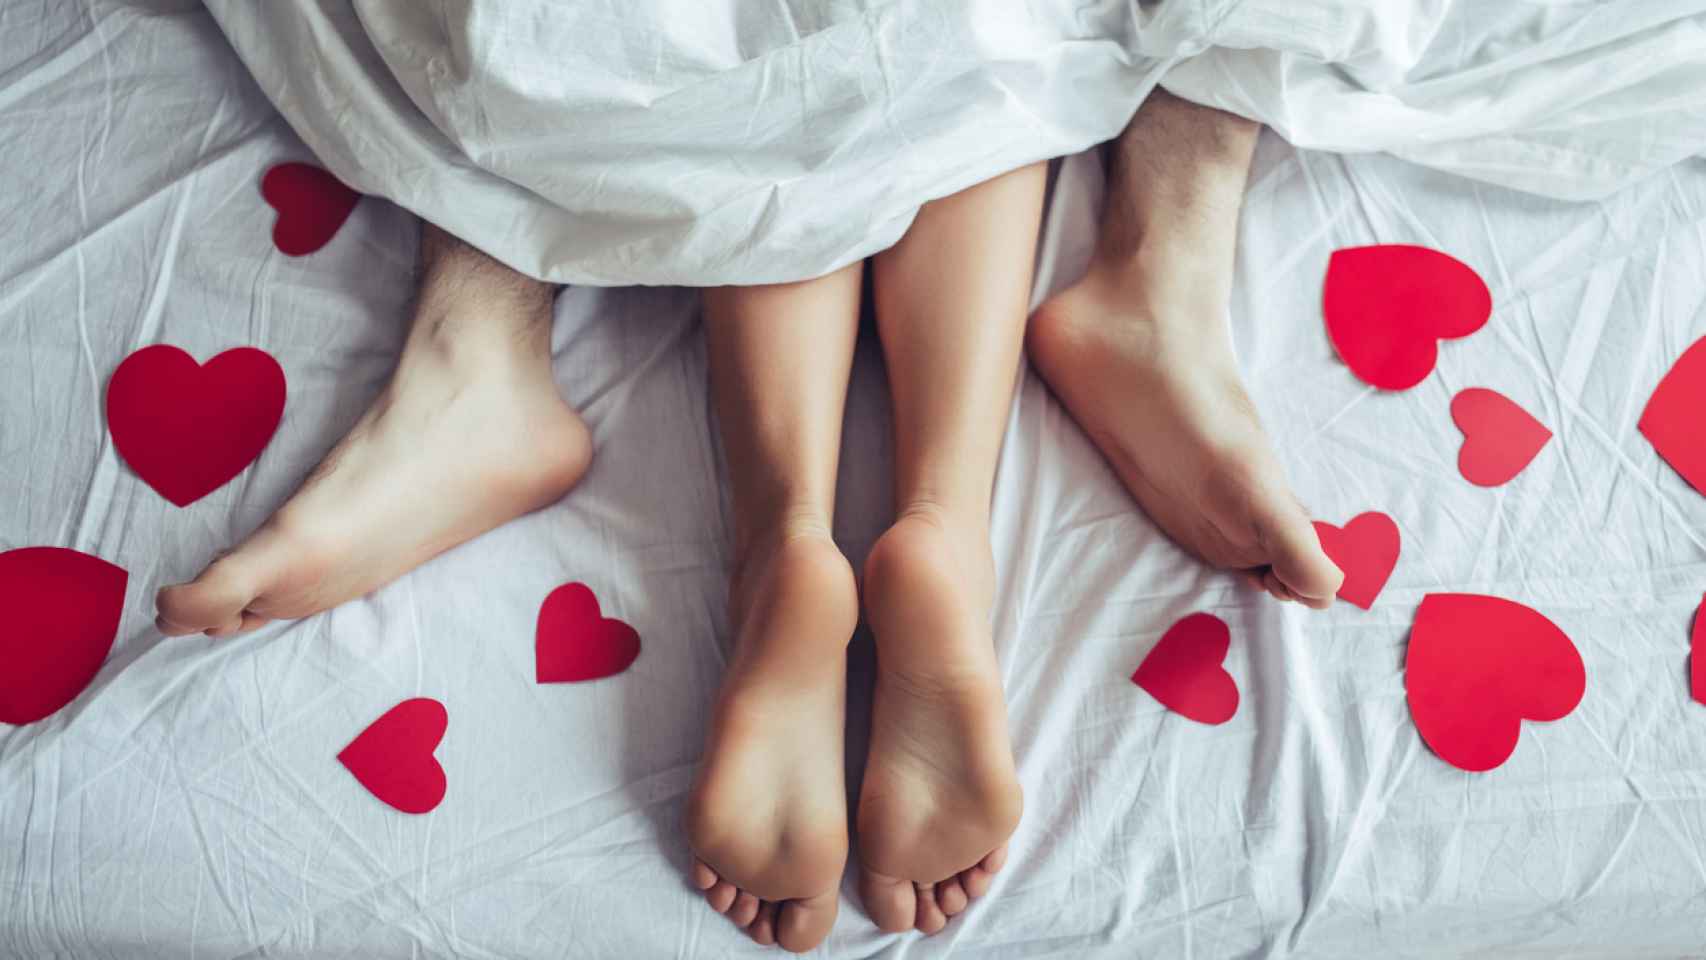 5 juguetes sexuales para disfrutar con tu pareja